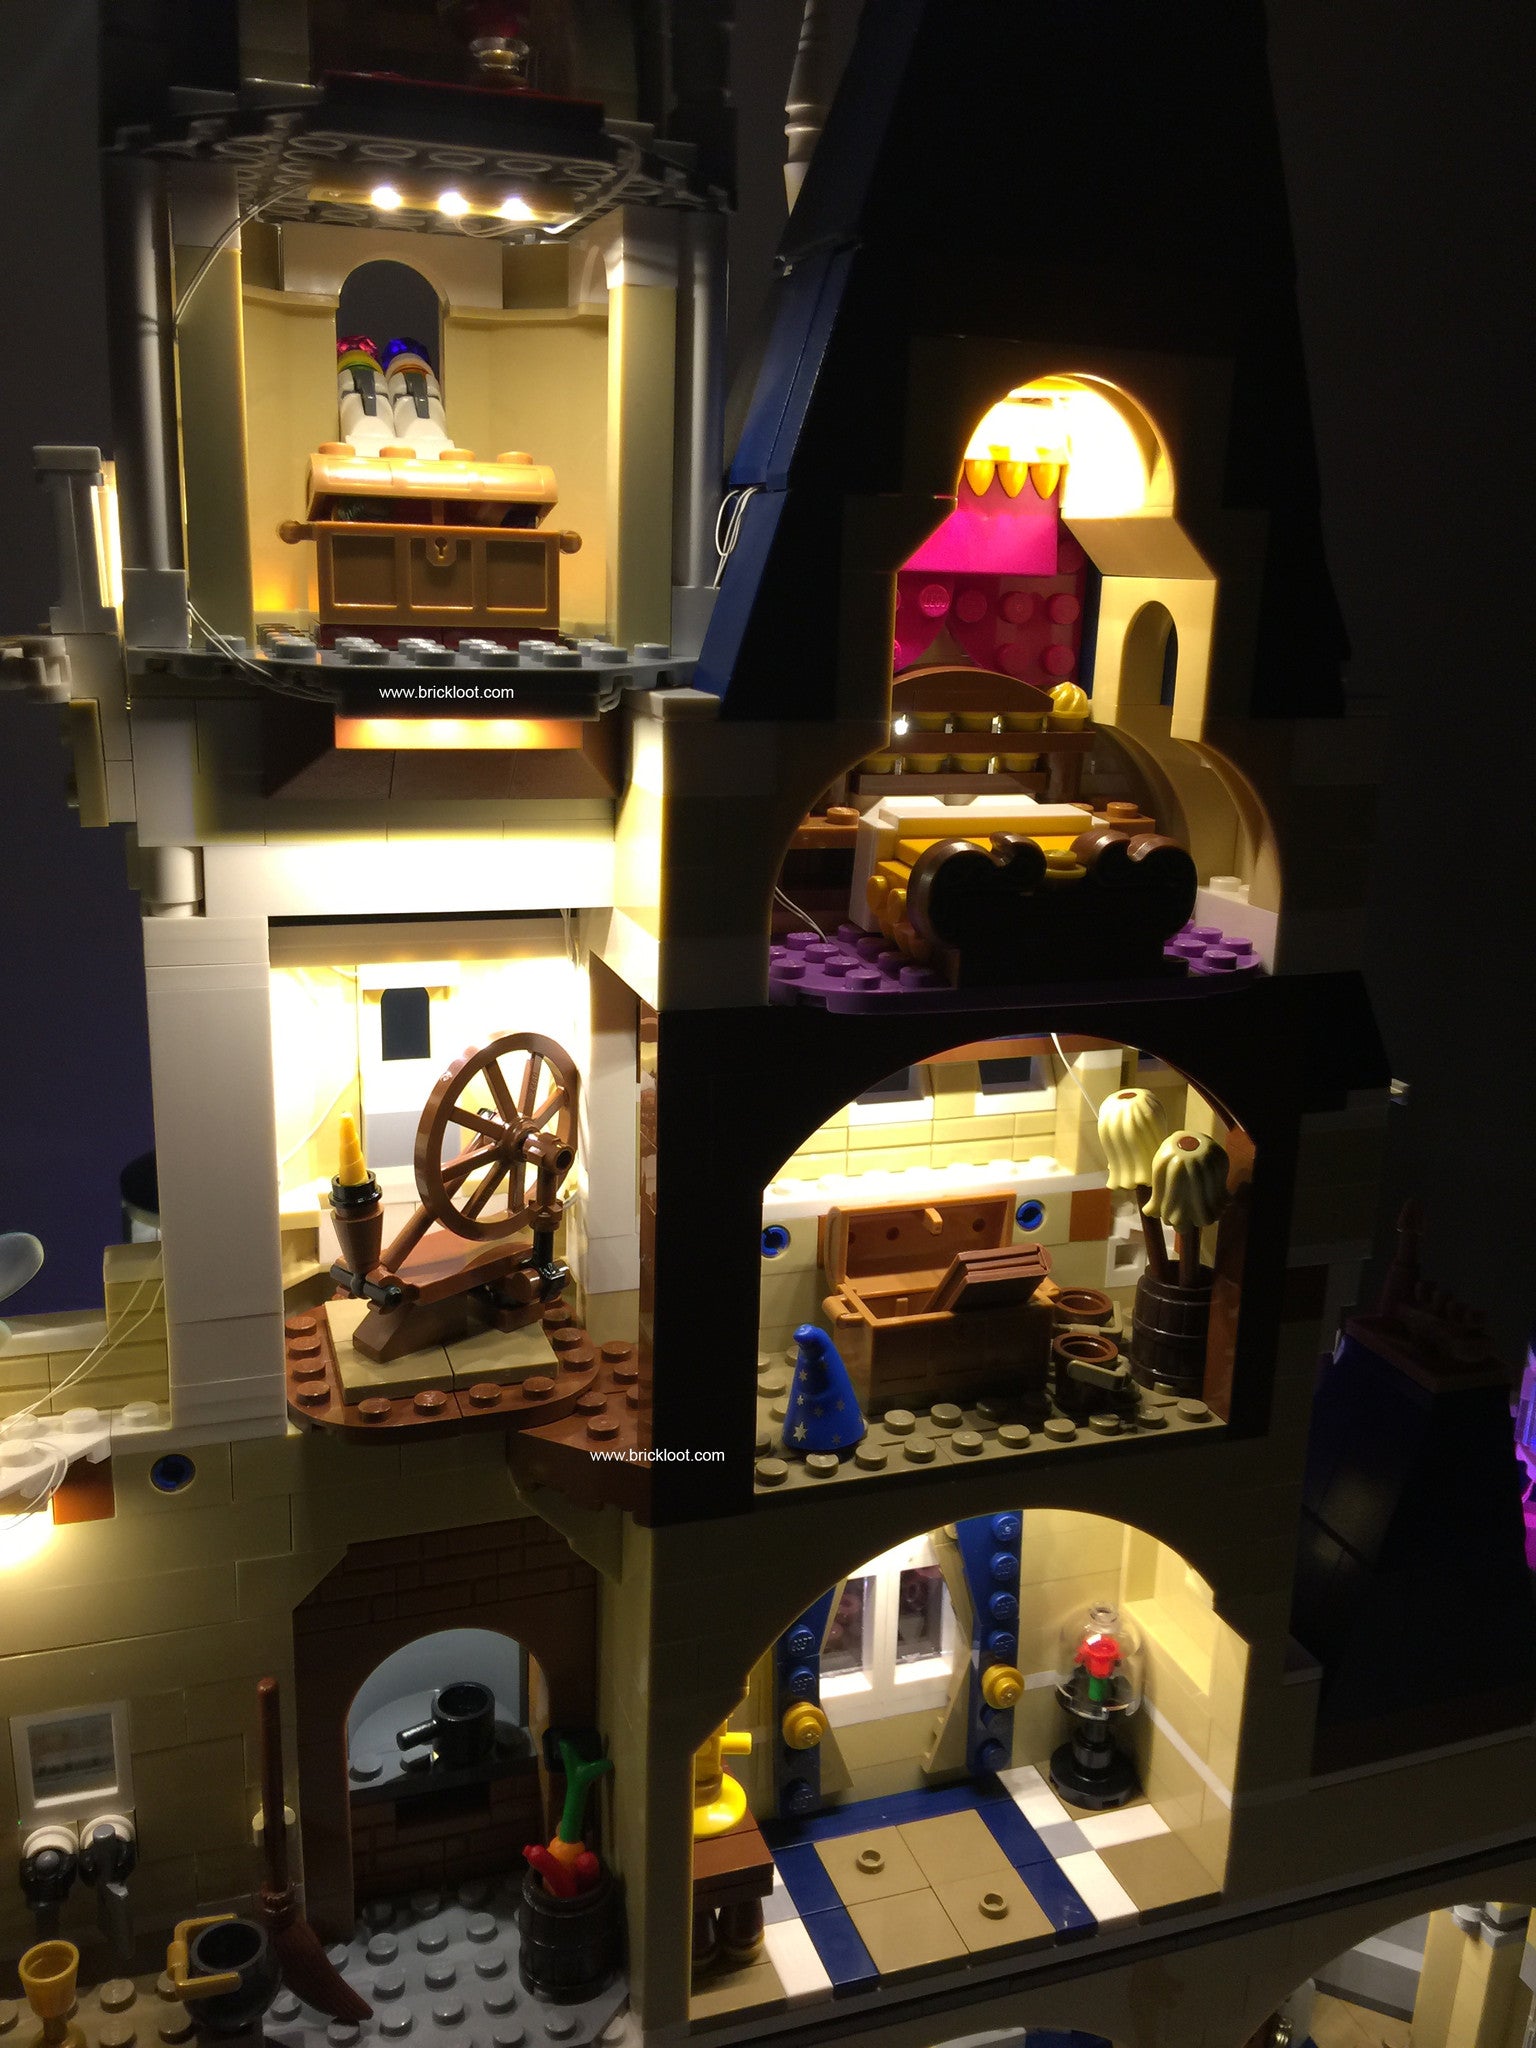 LED Lighting kit for LEGO® Disney Castle 71040 – Brick Loot